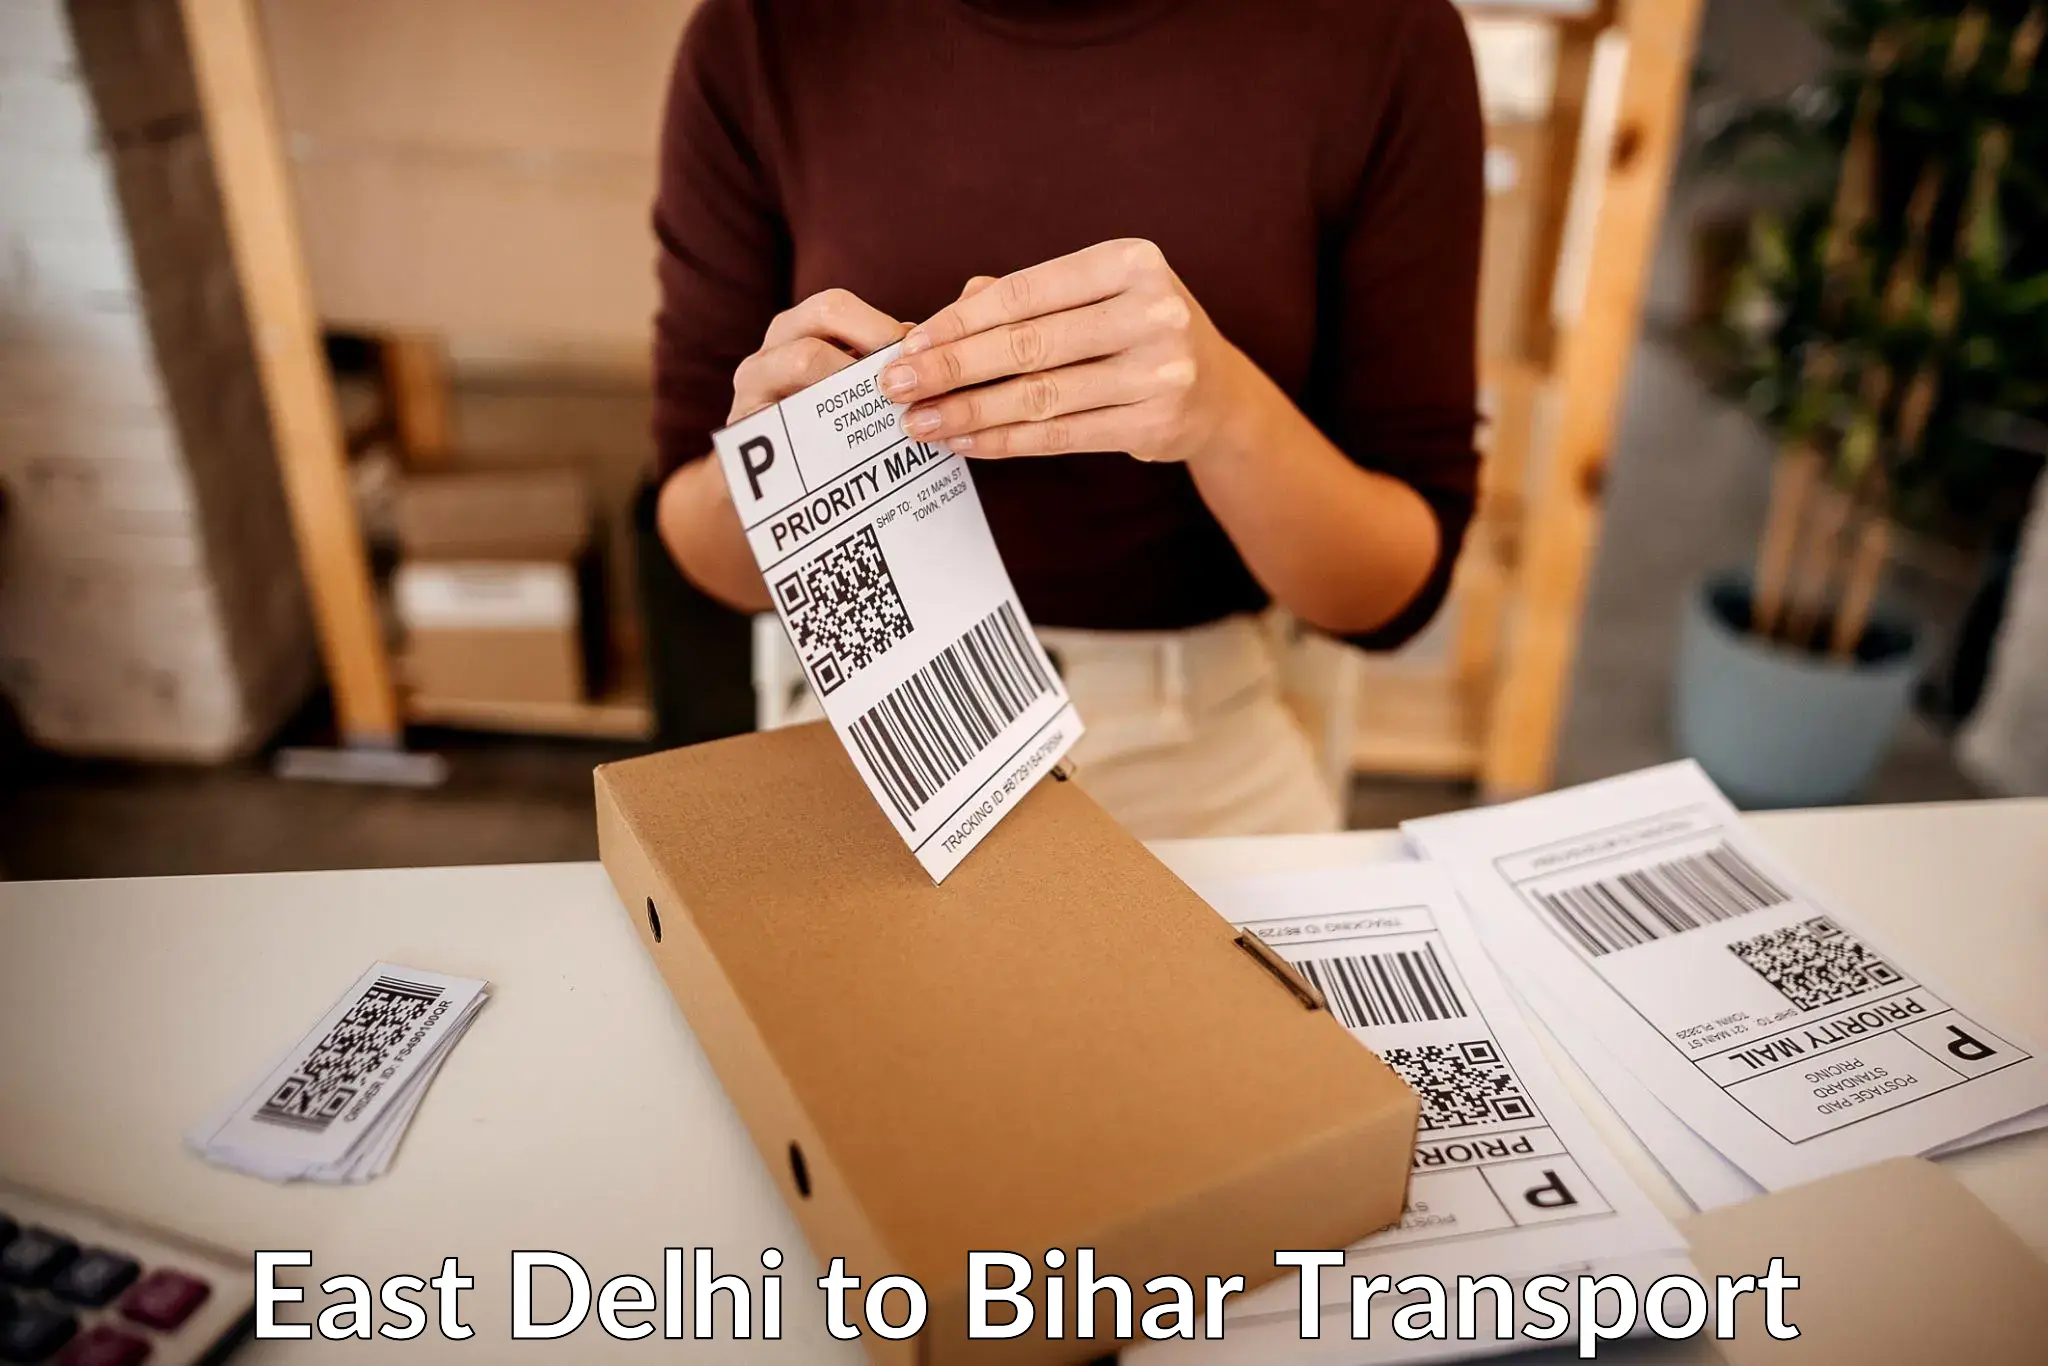 Shipping partner East Delhi to Birpur